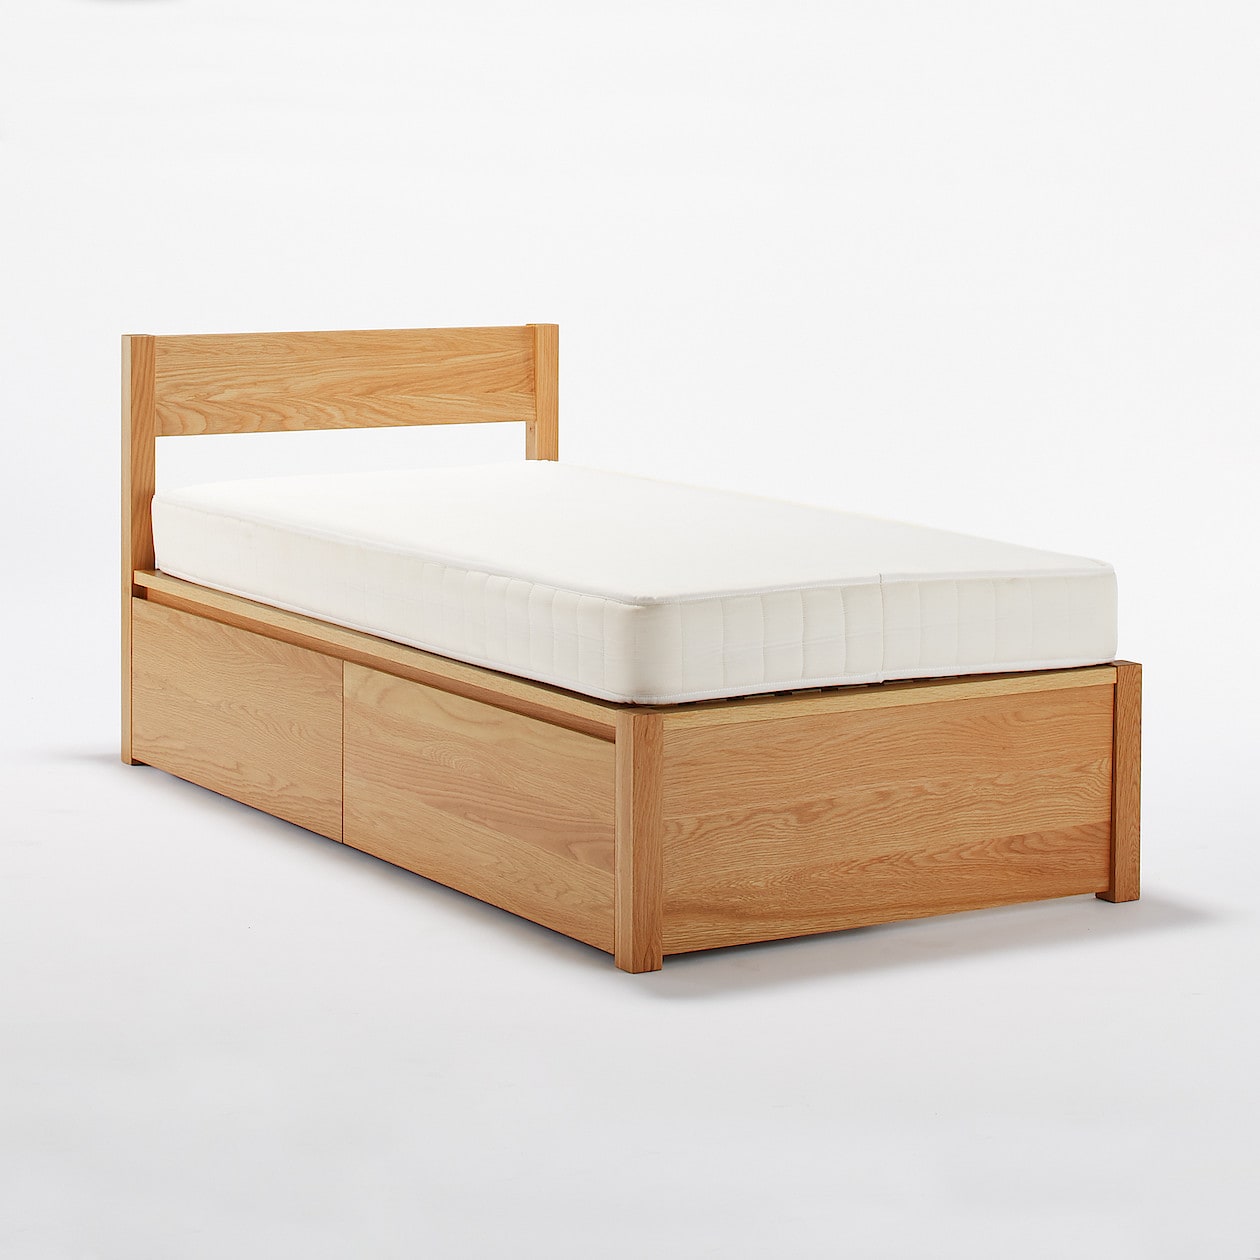 木製ベッド・オーク材・スモール